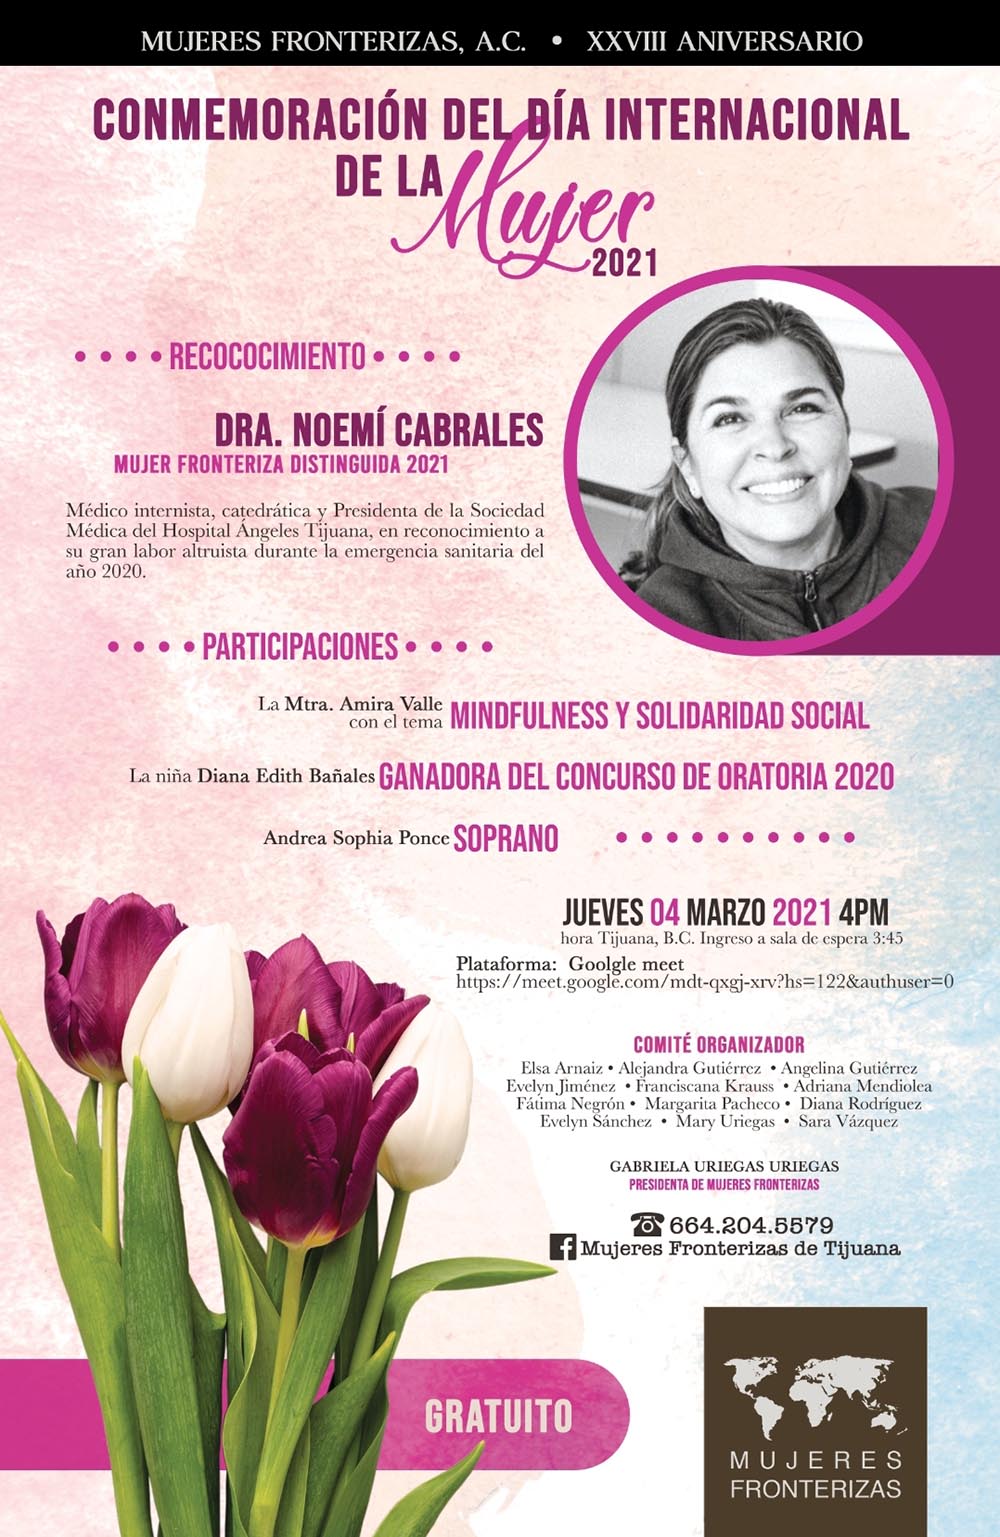 Reunión de trabajo virtual organizando el reconocimiento para la Dra. Nohemi Cabrales.